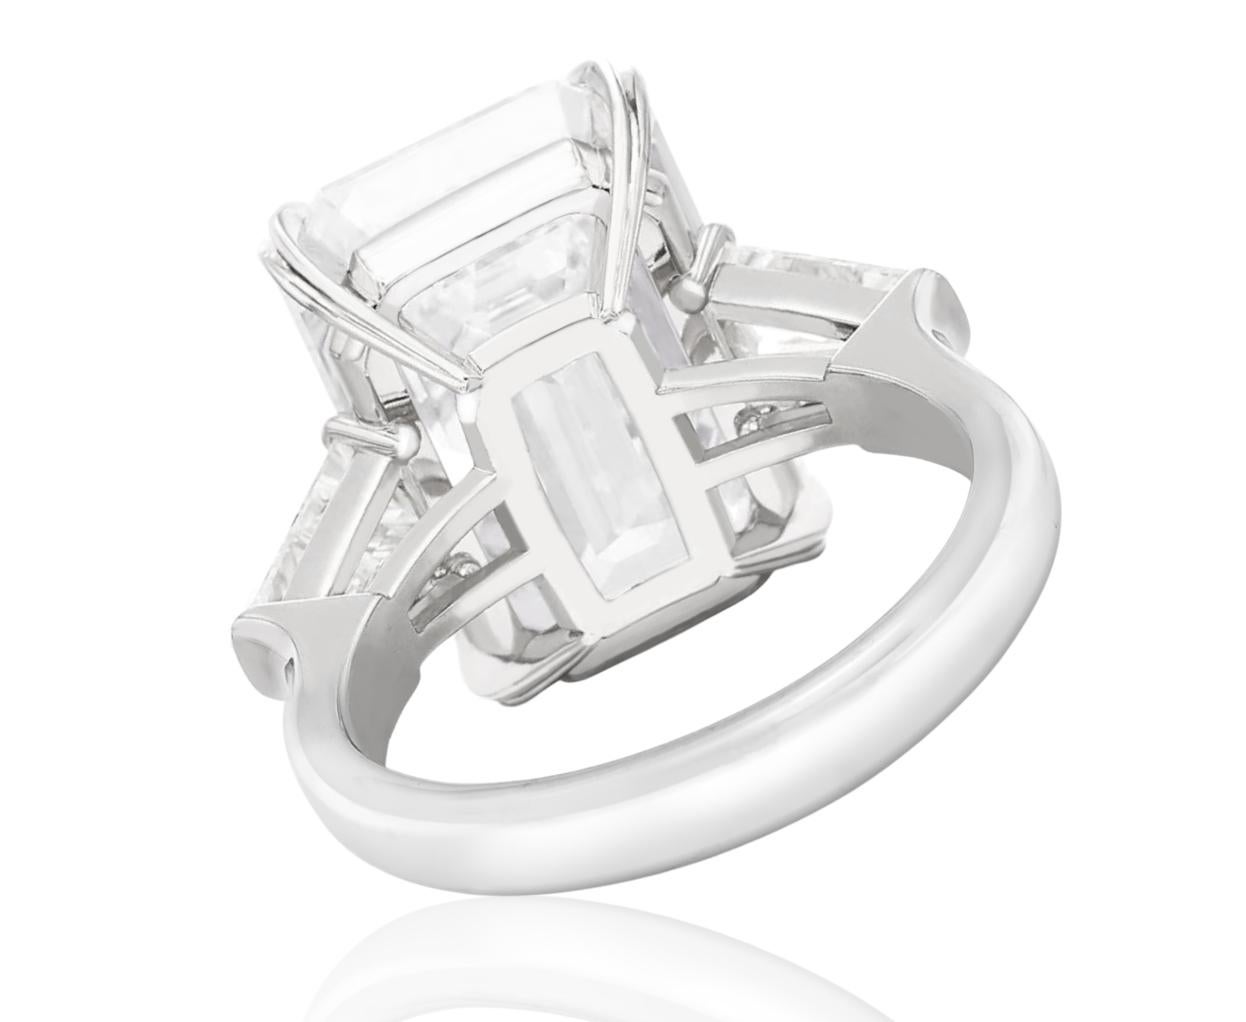 Antinori Fine Jewels ist stolz darauf, diese wichtige und beeindruckende 6 Karat GIA-zertifiziert anzubieten  Diamantring mit Smaragdschliff. 

Der Ring besteht aus einem smaragdgeschliffenen Diamanten mit einem Gewicht von 6 Karat, begleitet von